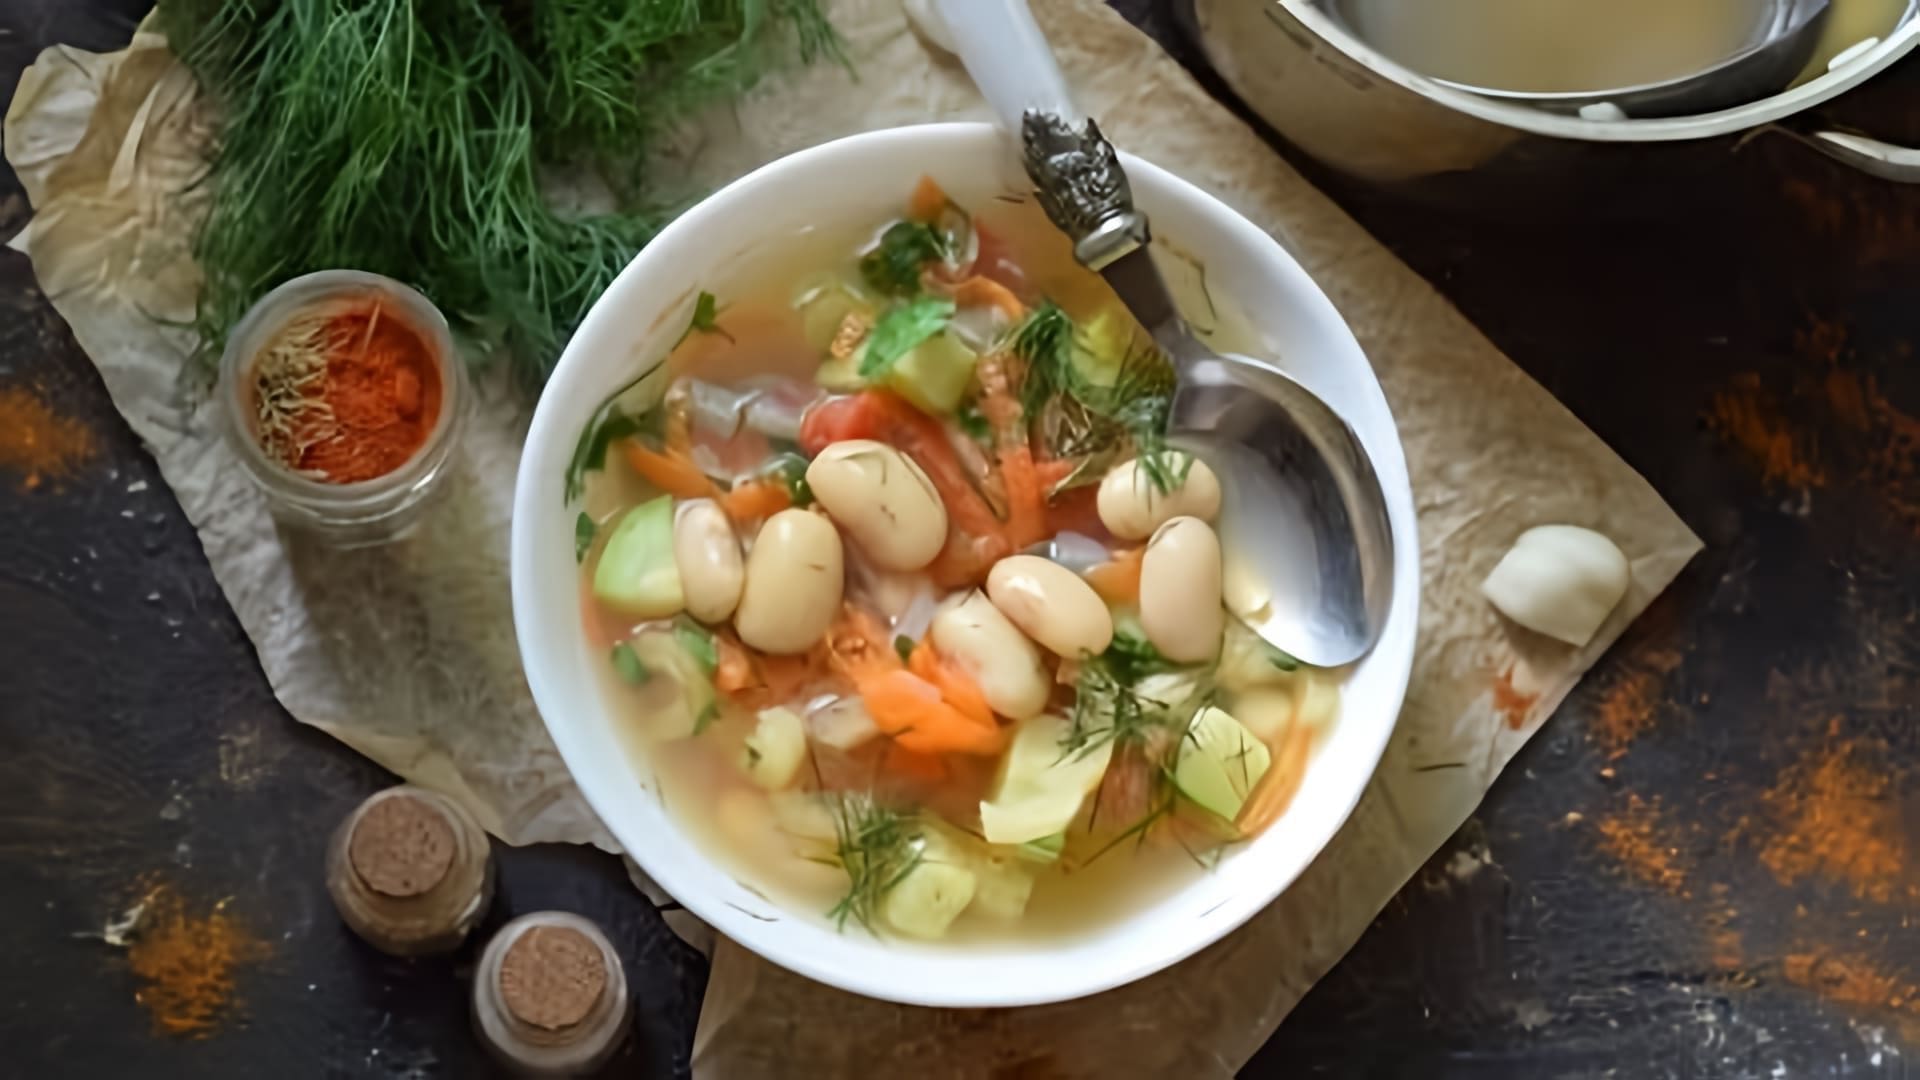 В этом видео демонстрируется рецепт приготовления фасолевого супа с сельдереем